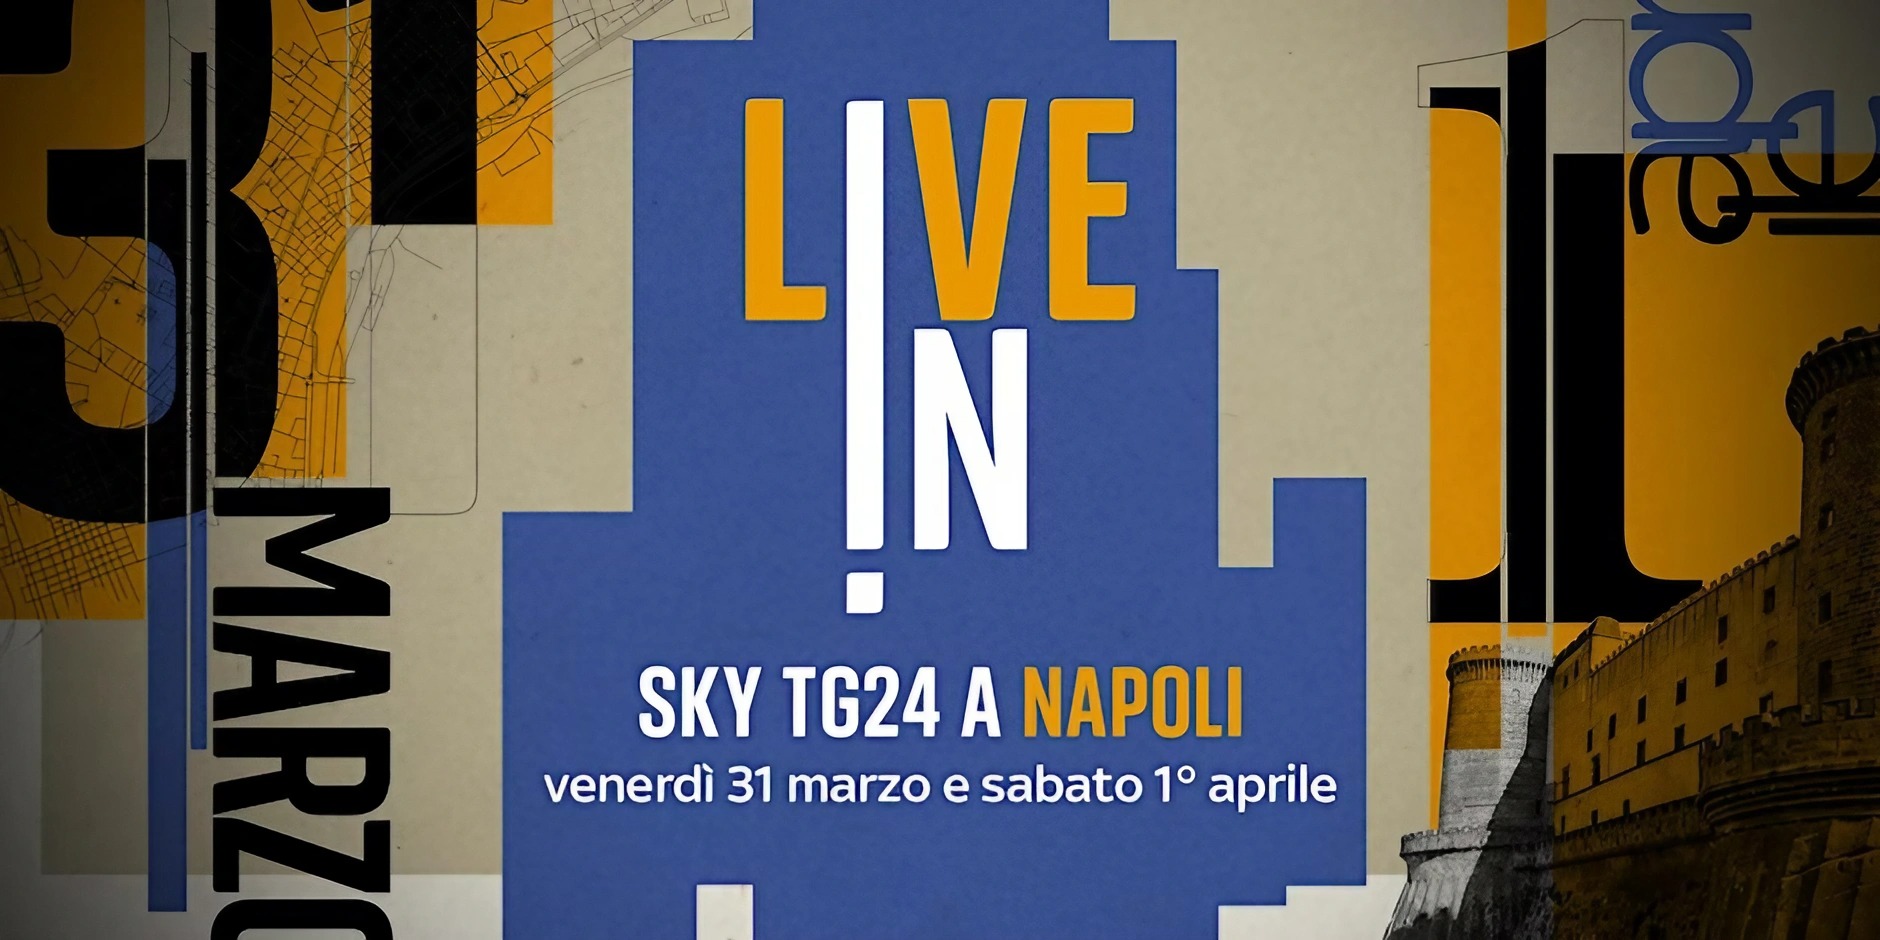 sky tg 24 с концертом в Неаполе